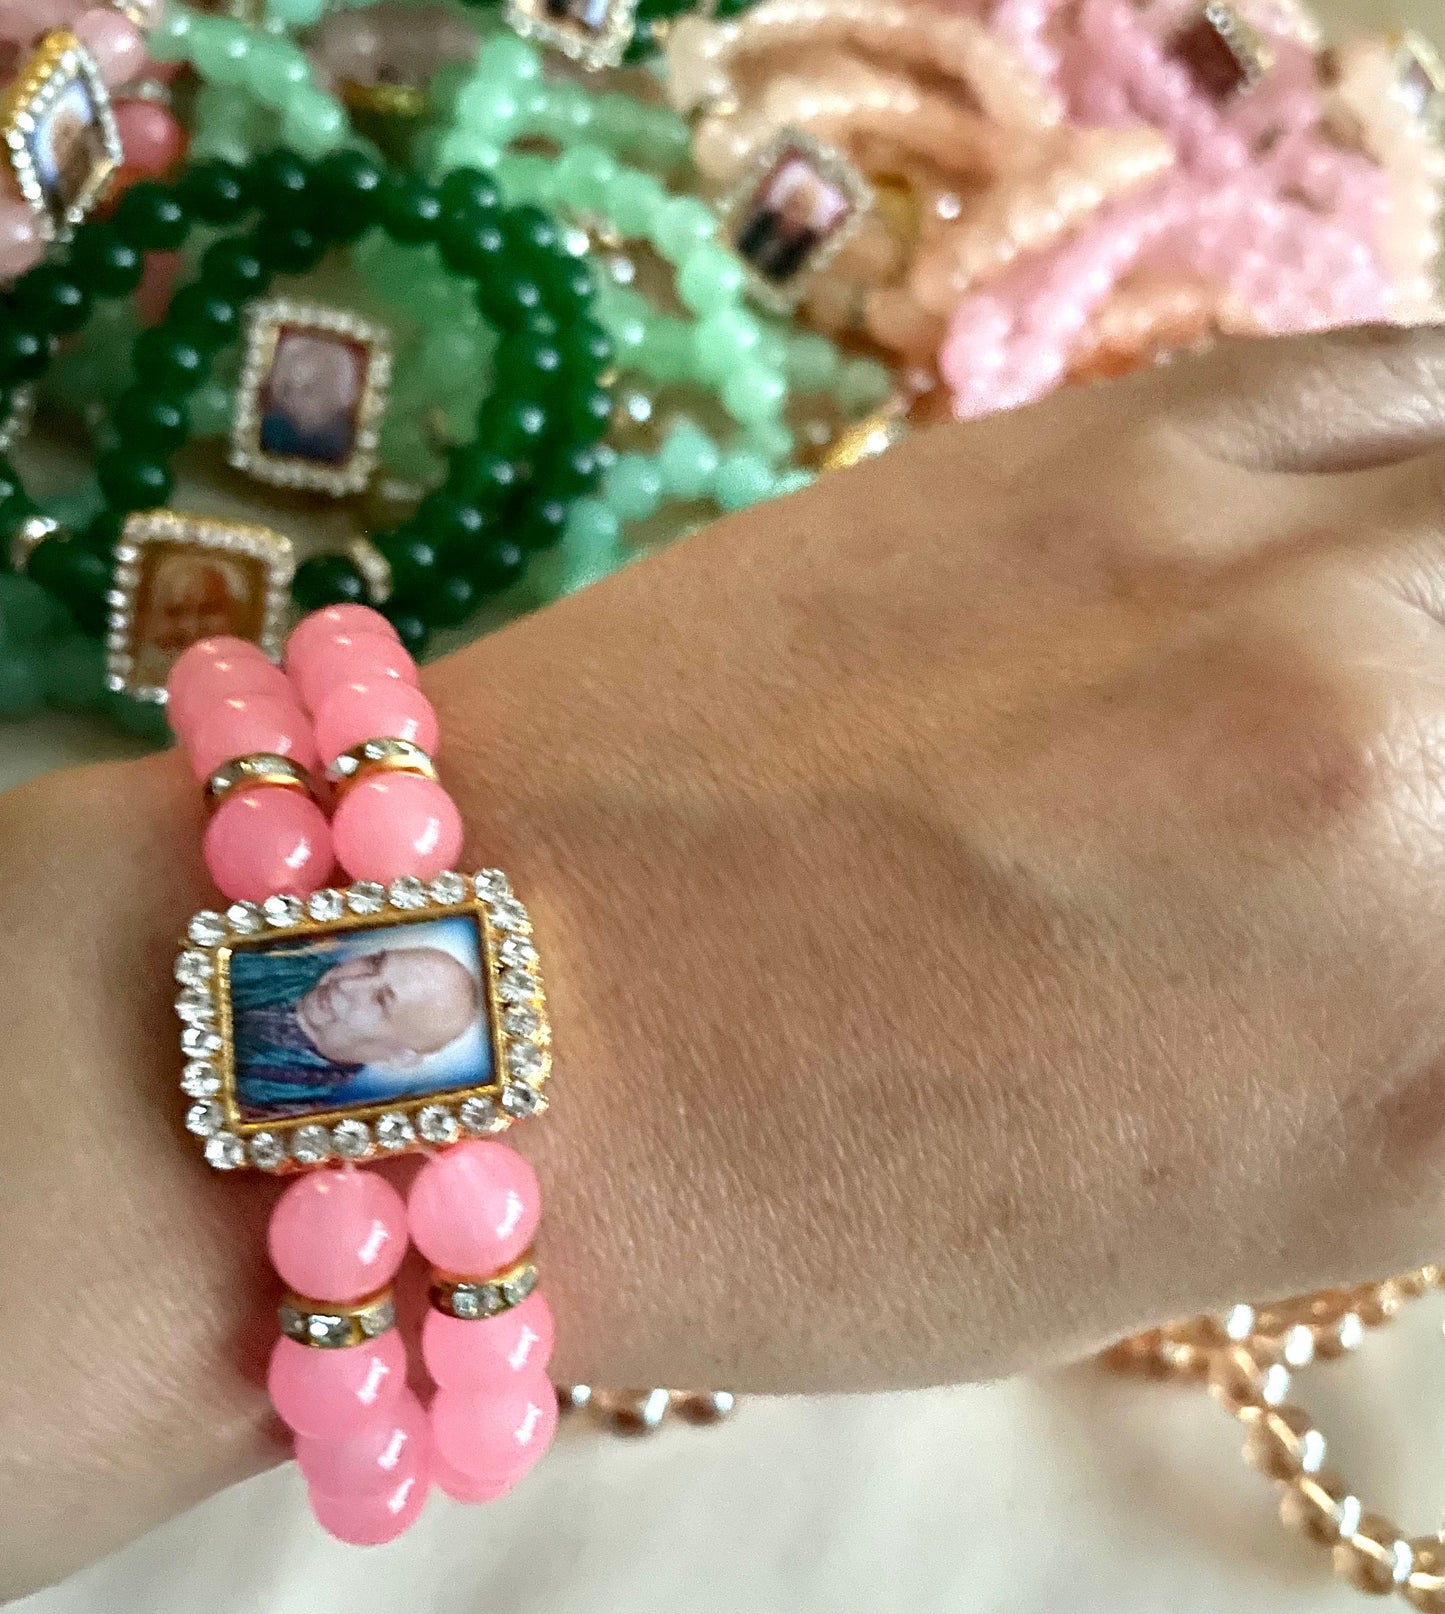 Guruji Return Gifts Favours Bracelets pastel beads with Guru ji Photo motif